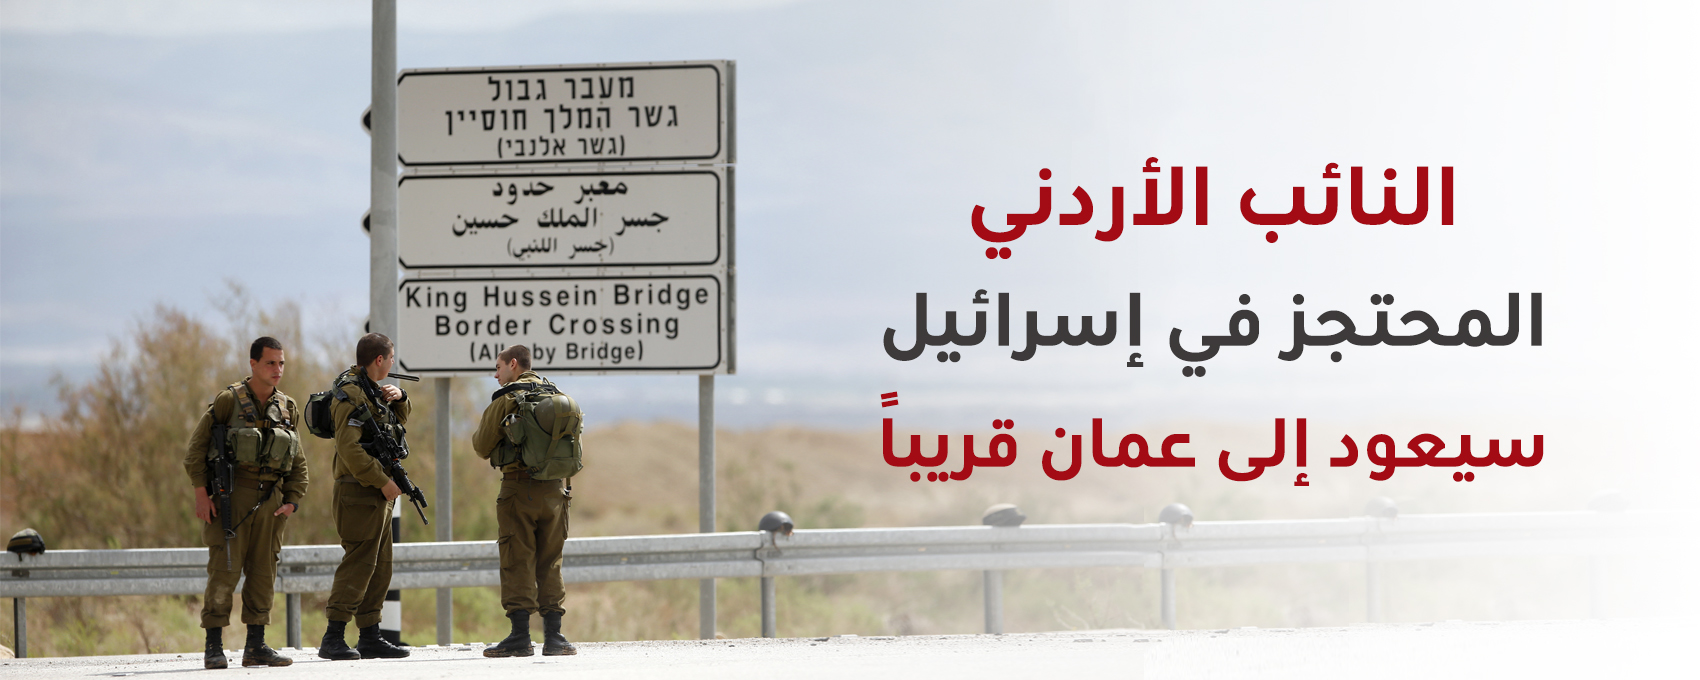 ستراتيجيكس-خبر-صحفي-النائب-الأردني-المحتجز-في-إسرائيل.jpg